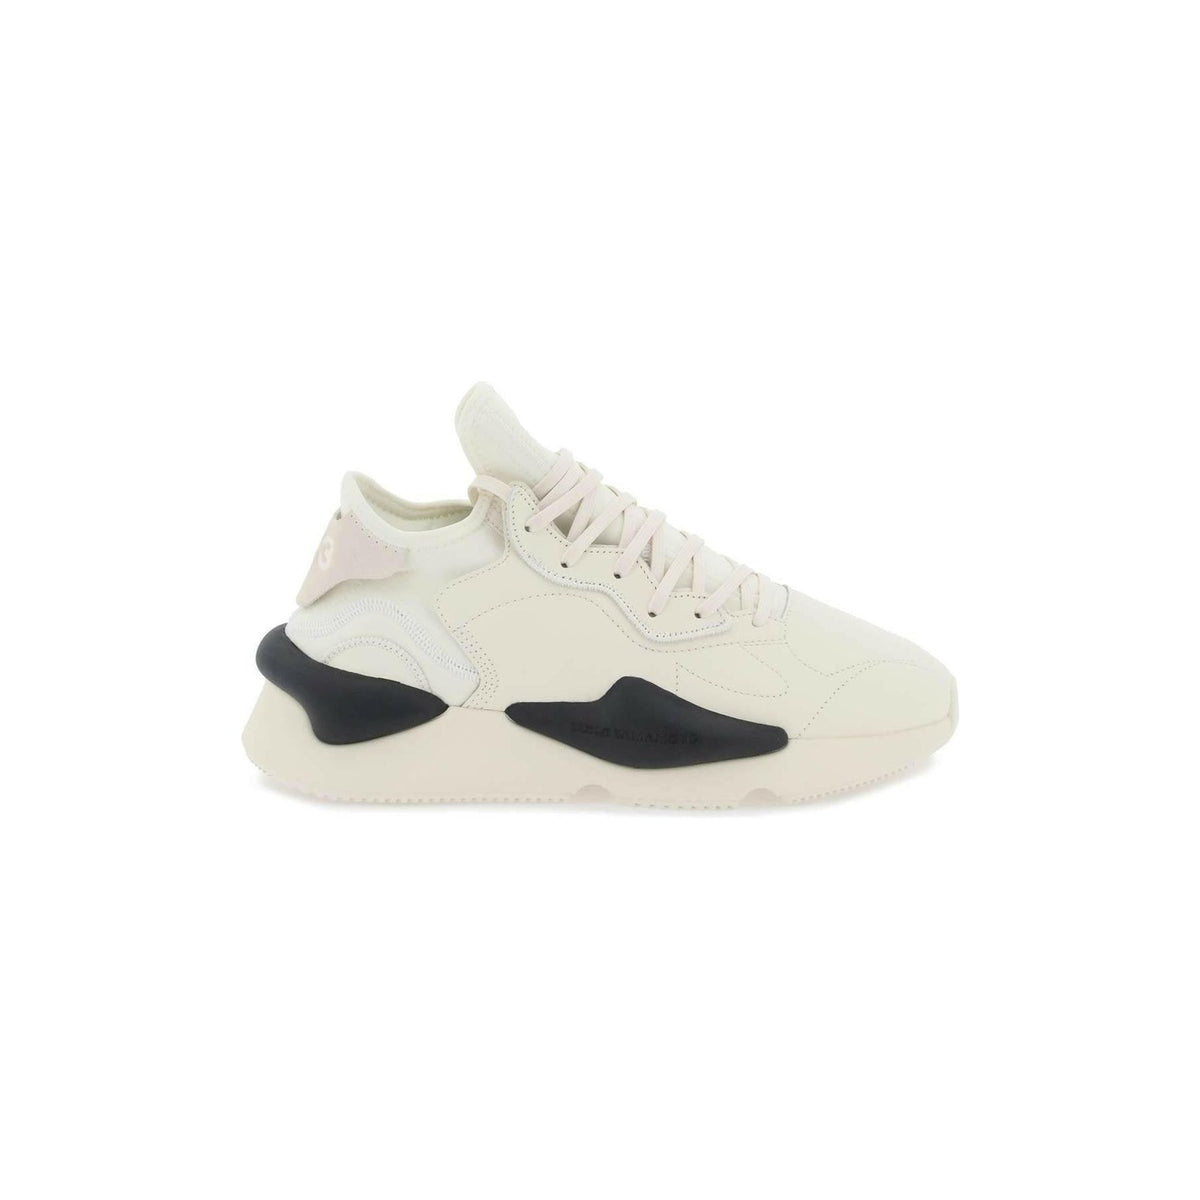 Y-3 - Cream White Kaiwa Sneakers - JOHN JULIA